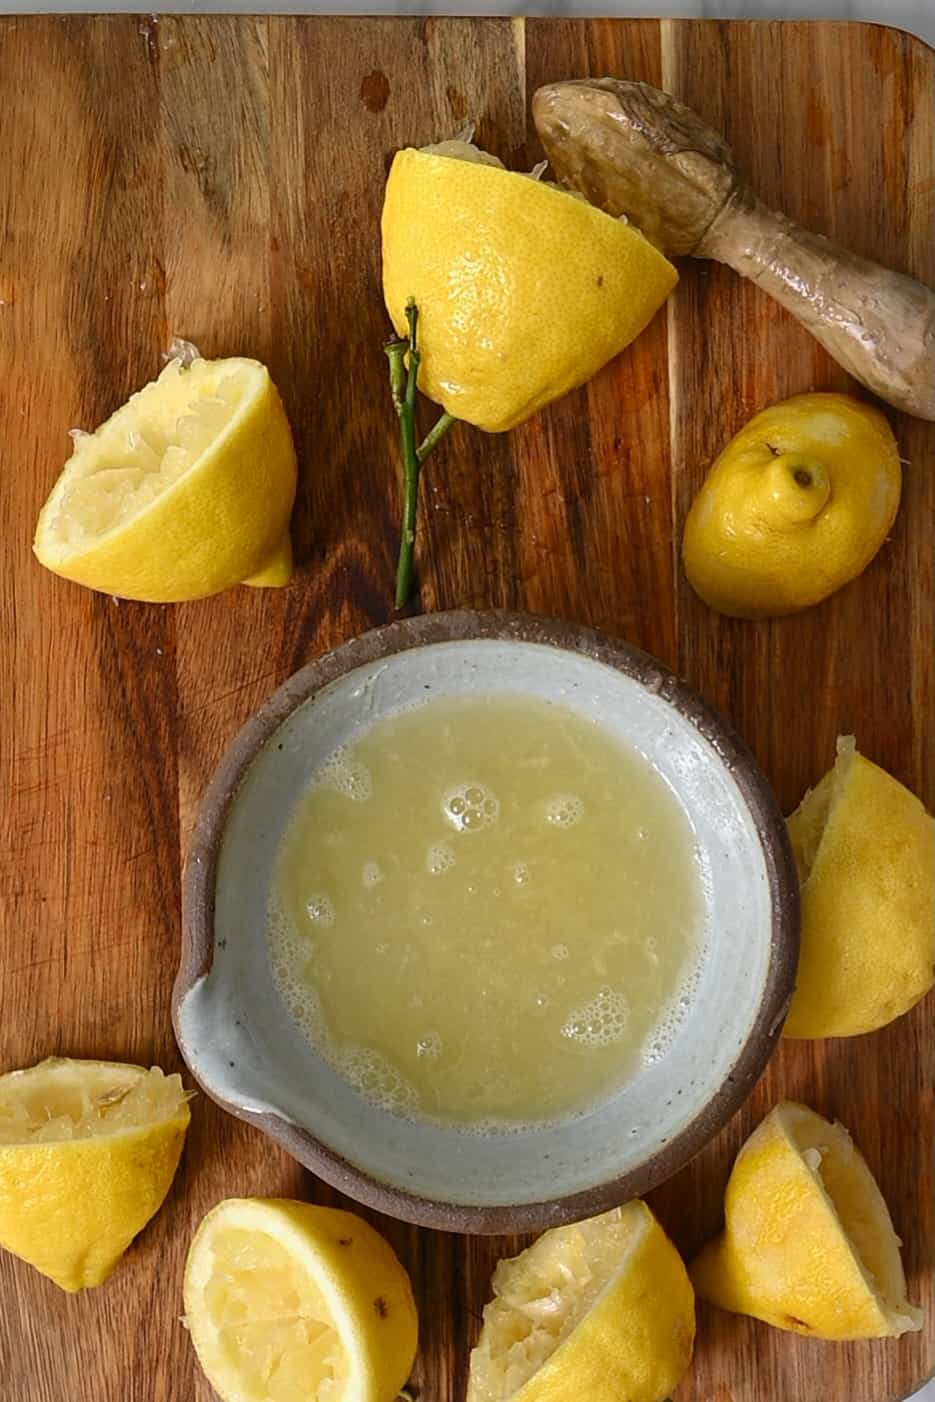 Juiced lemons and a bowl with lemon juice